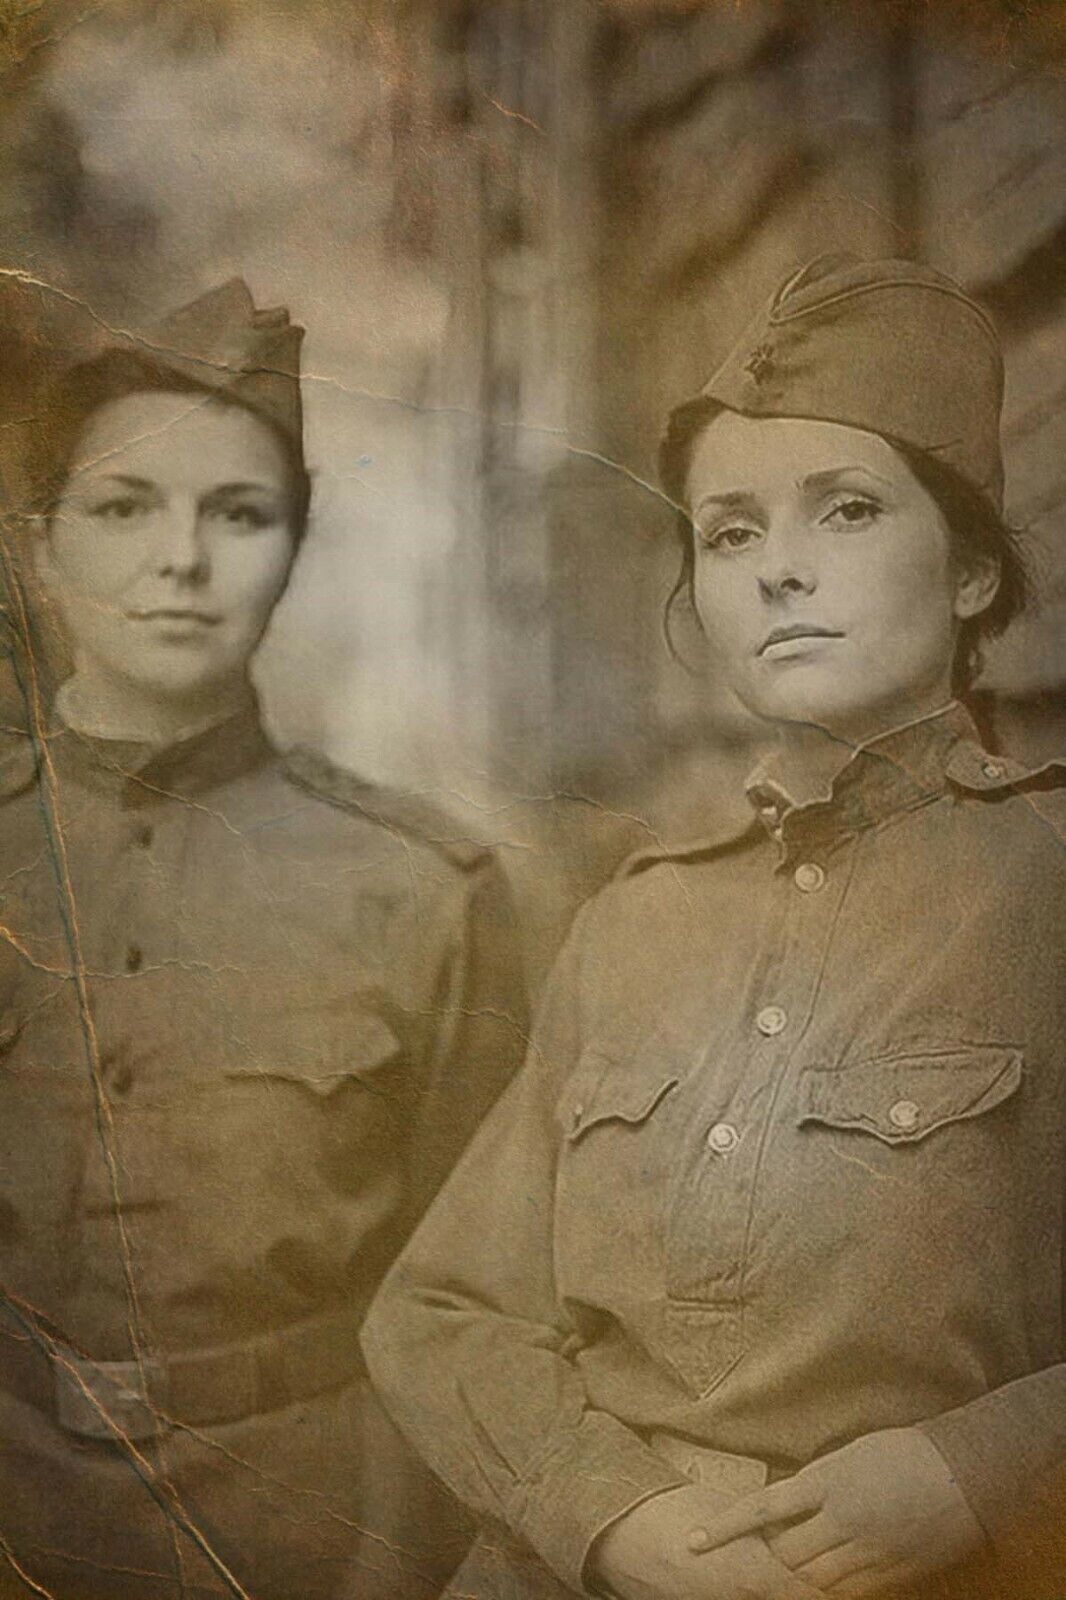 Soviet Union woman uniform WW2 Photo Glossy 4*6 in W025